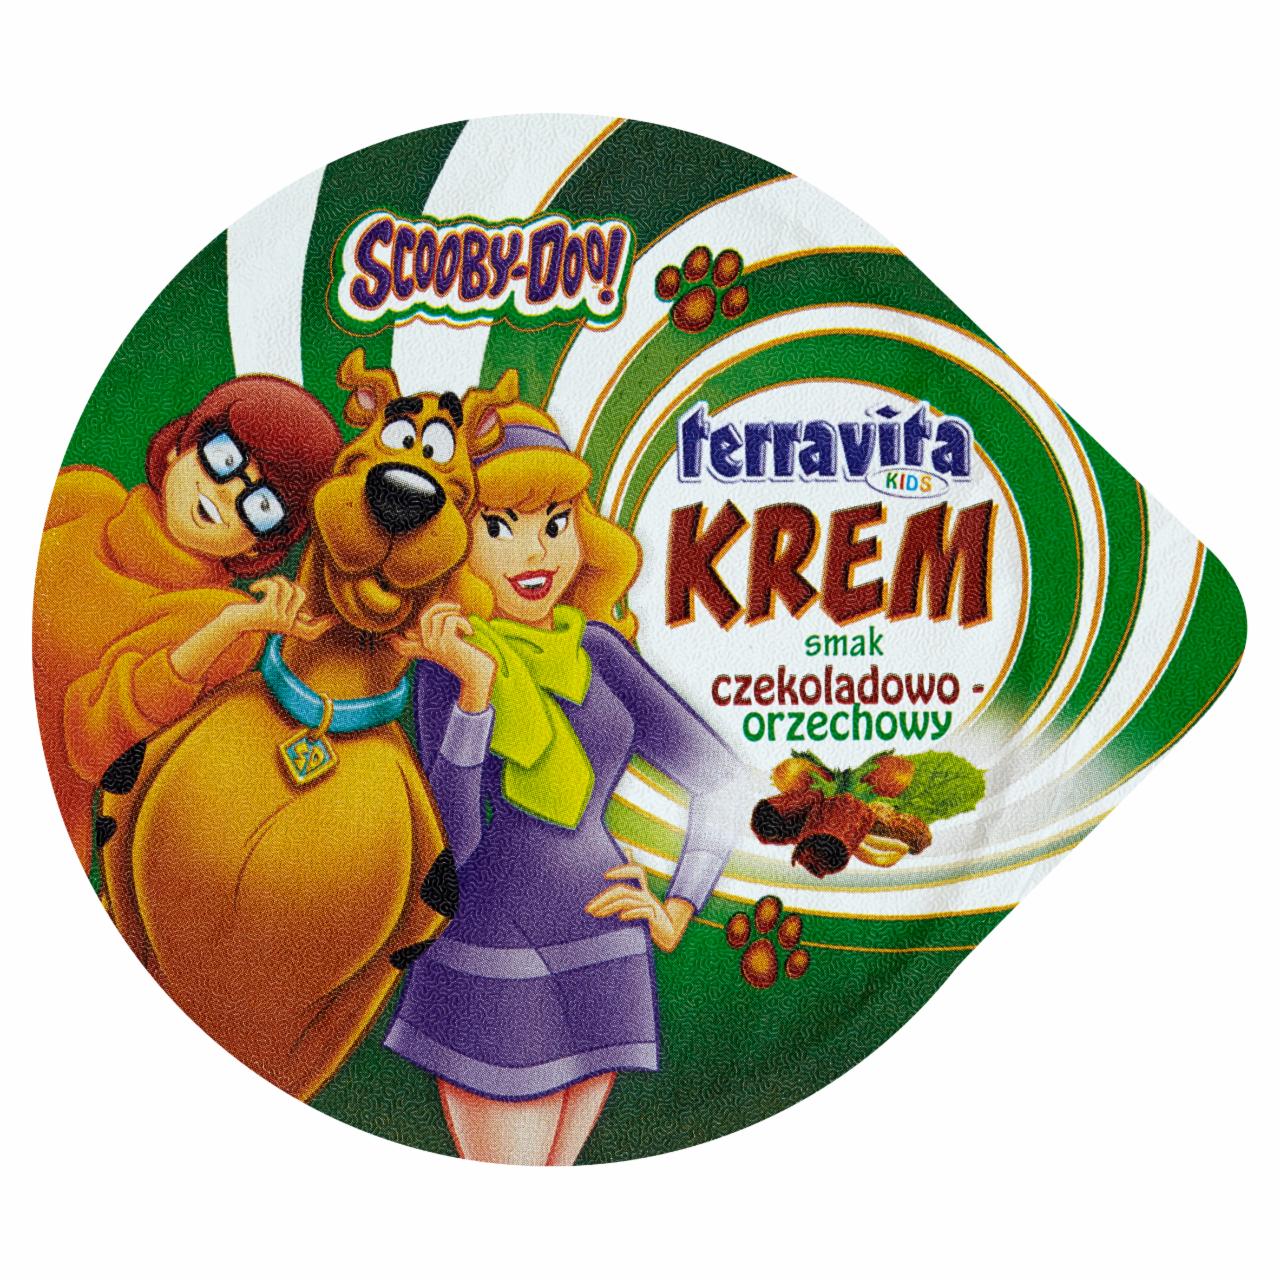 Zdjęcia - Terravita Kids Scooby-Doo Krem smak czekoladowo-orzechowy 160 g